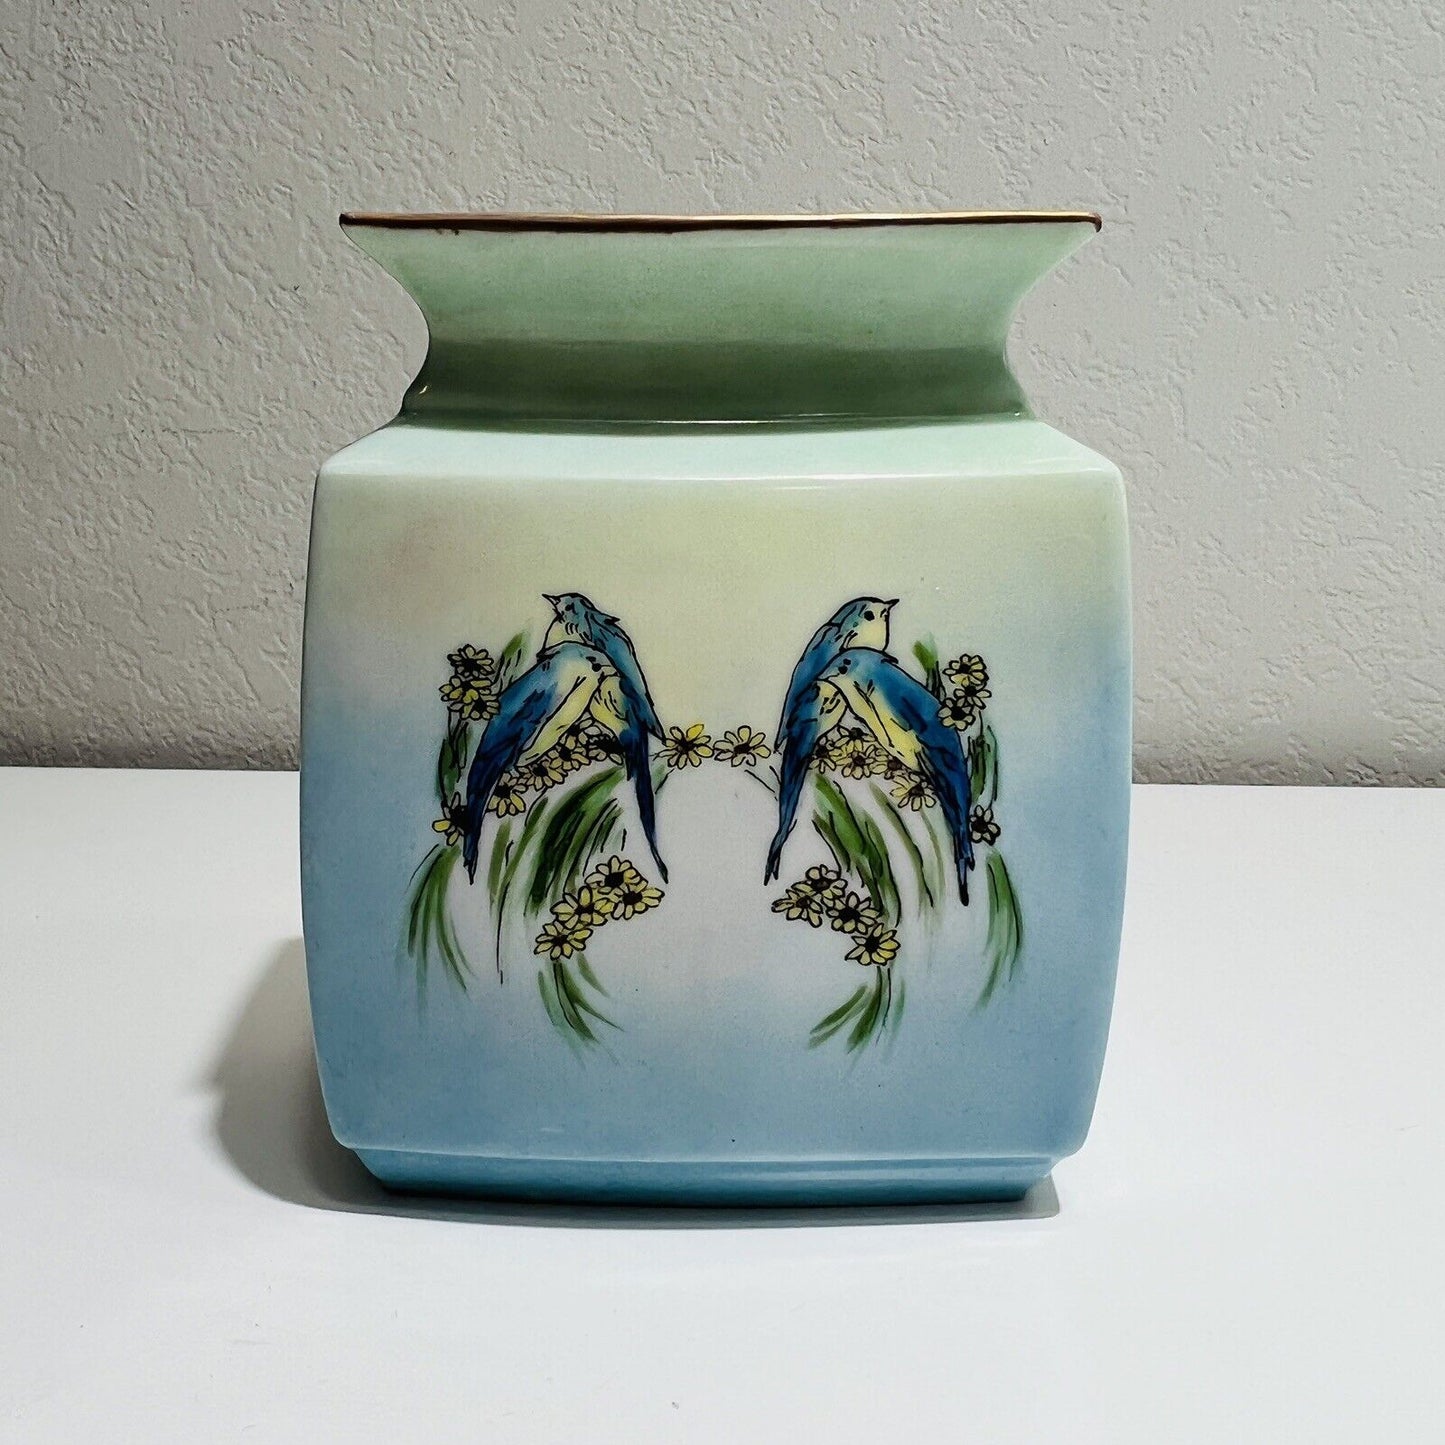 Bavaria Shonwald Vase Bud Blue Bird Design 1127 Porcelain Vintage P.S.A.A.